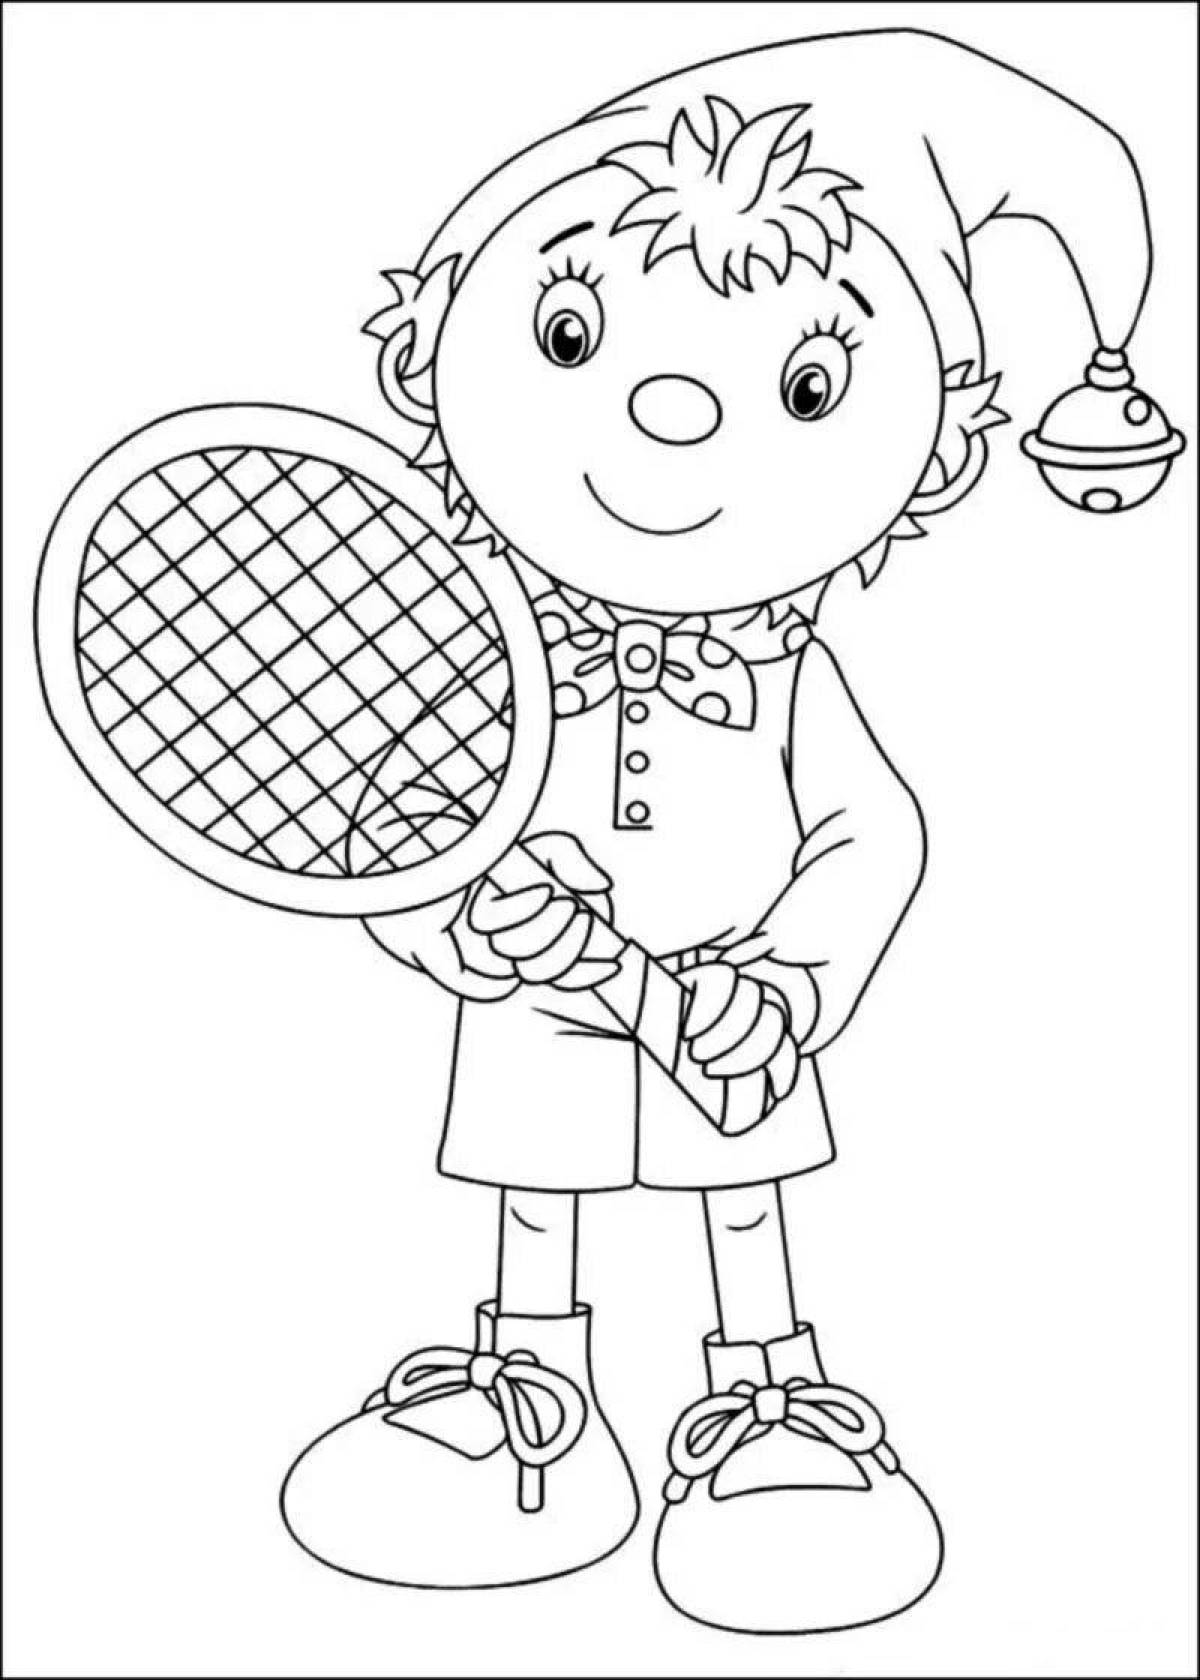 Веселая теннисная раскраска для детей